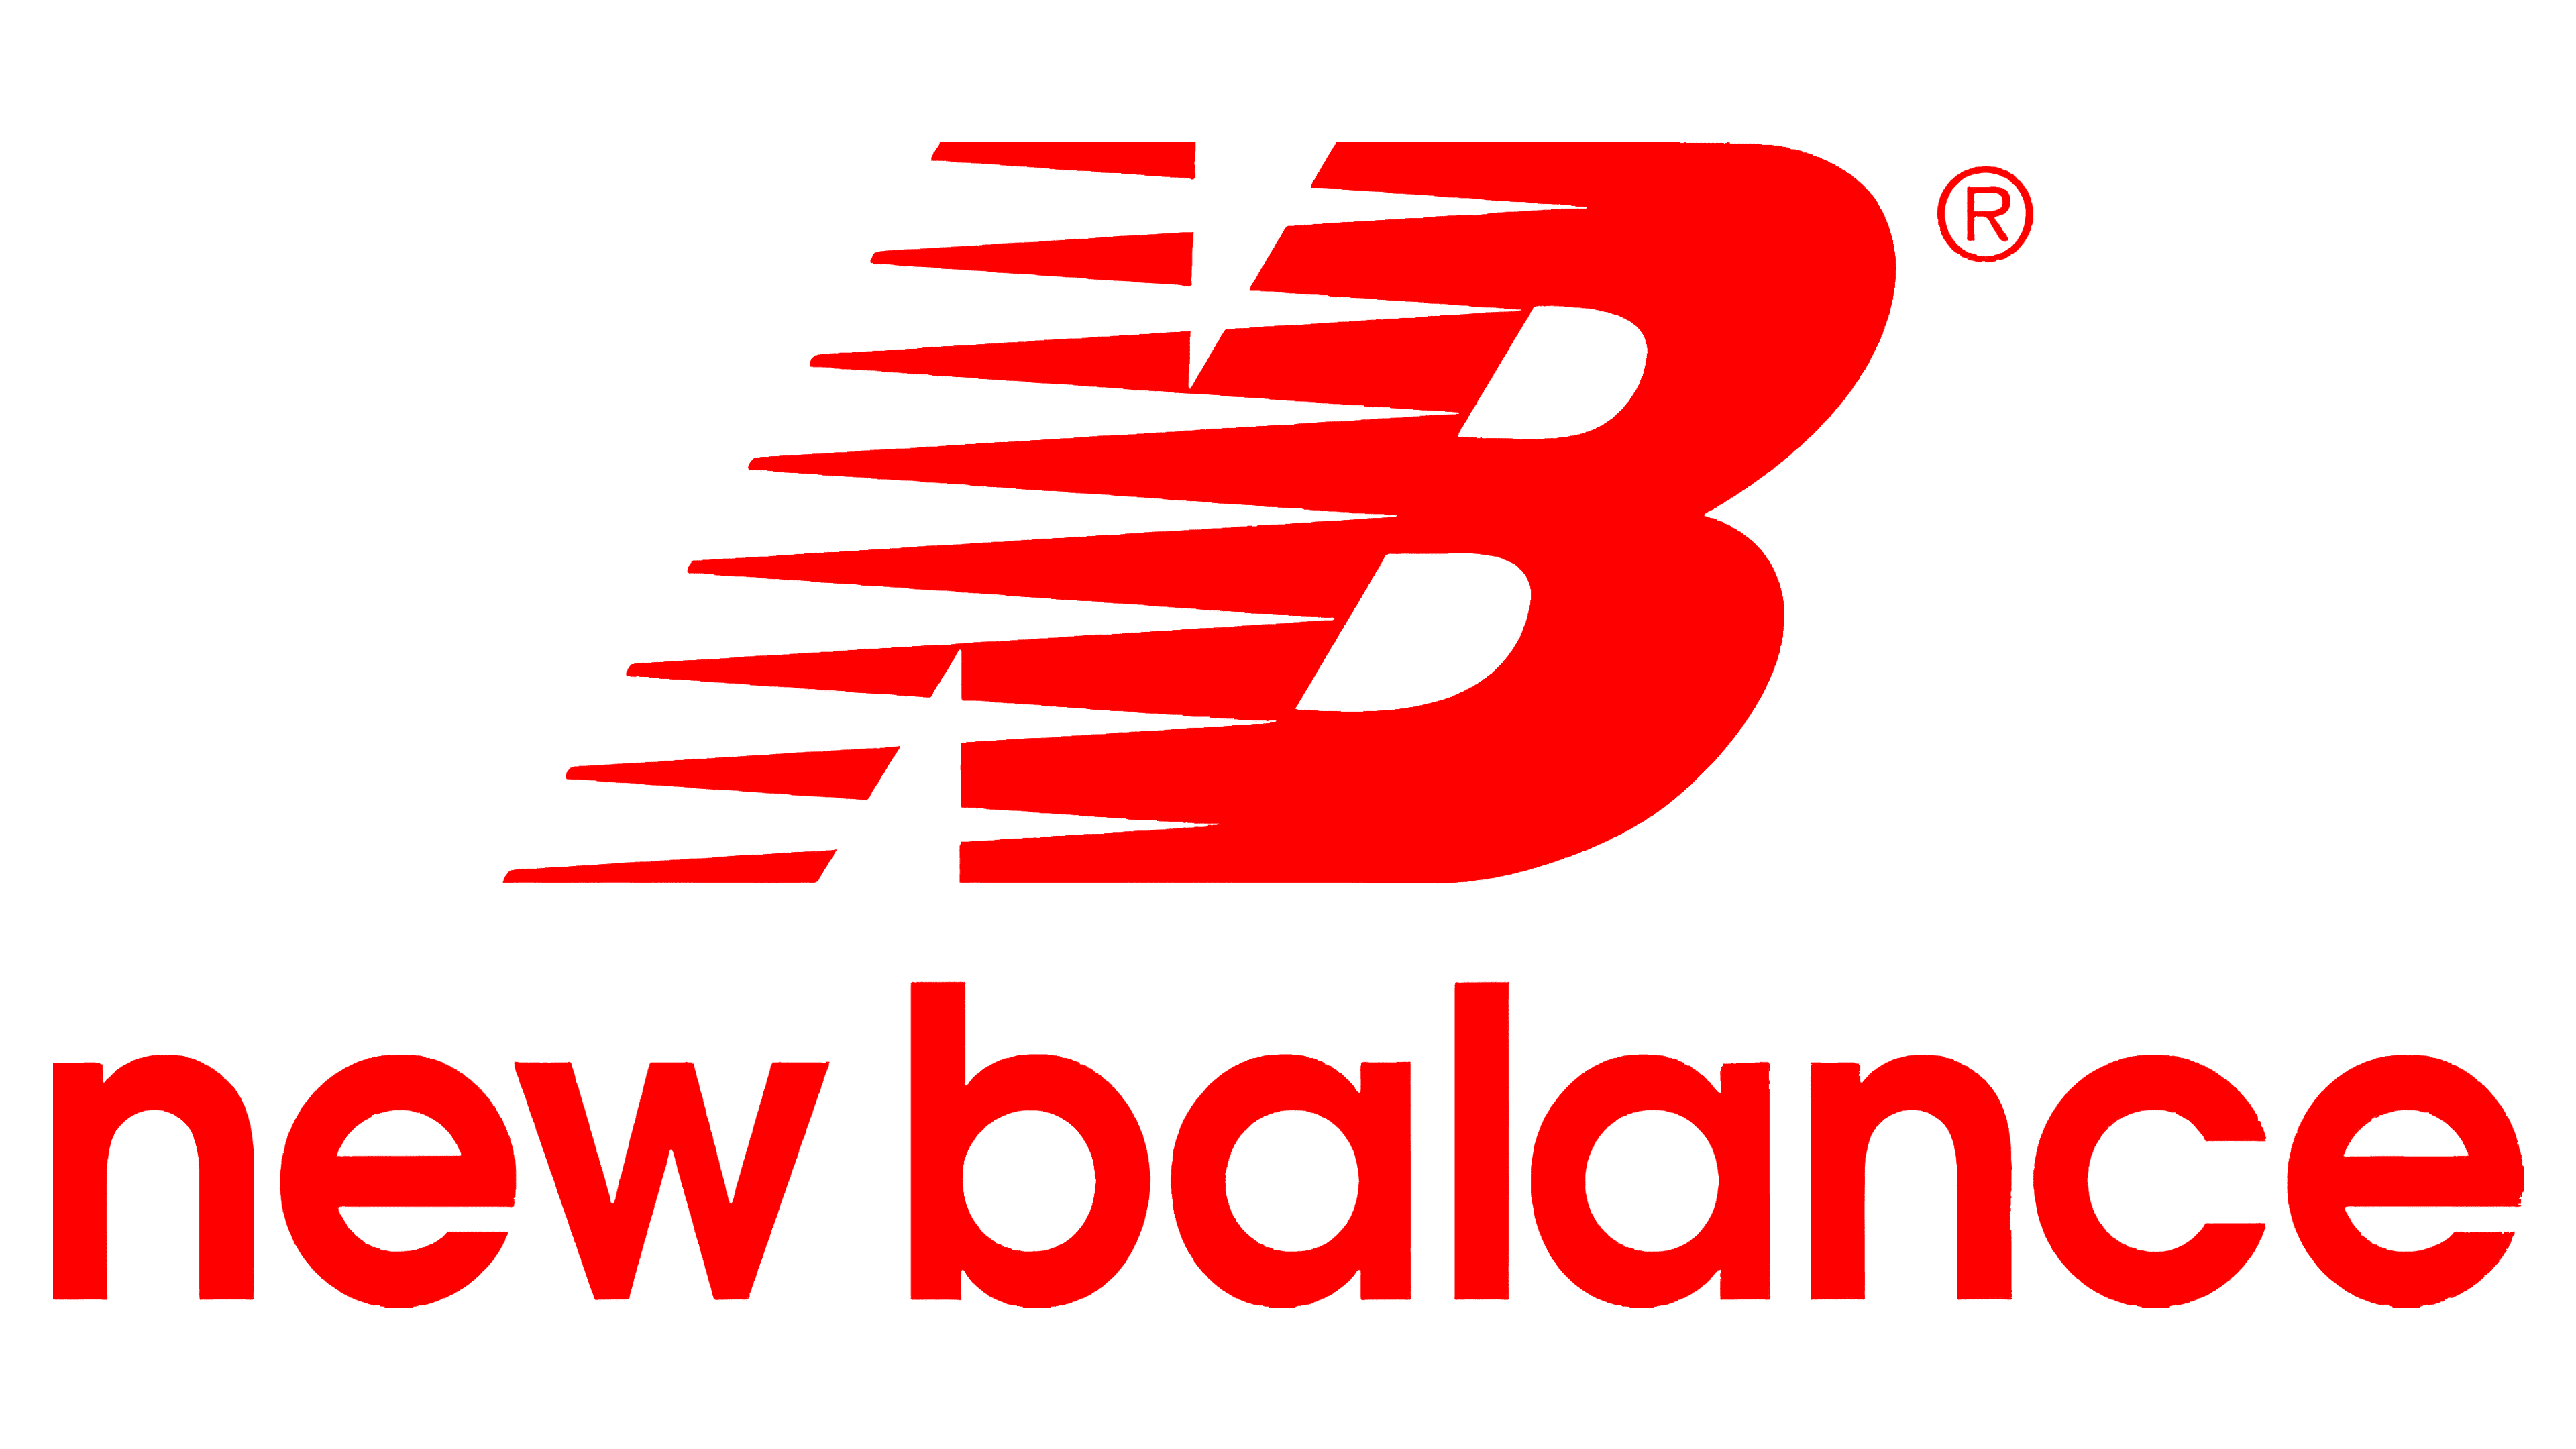 new balance shoes logo